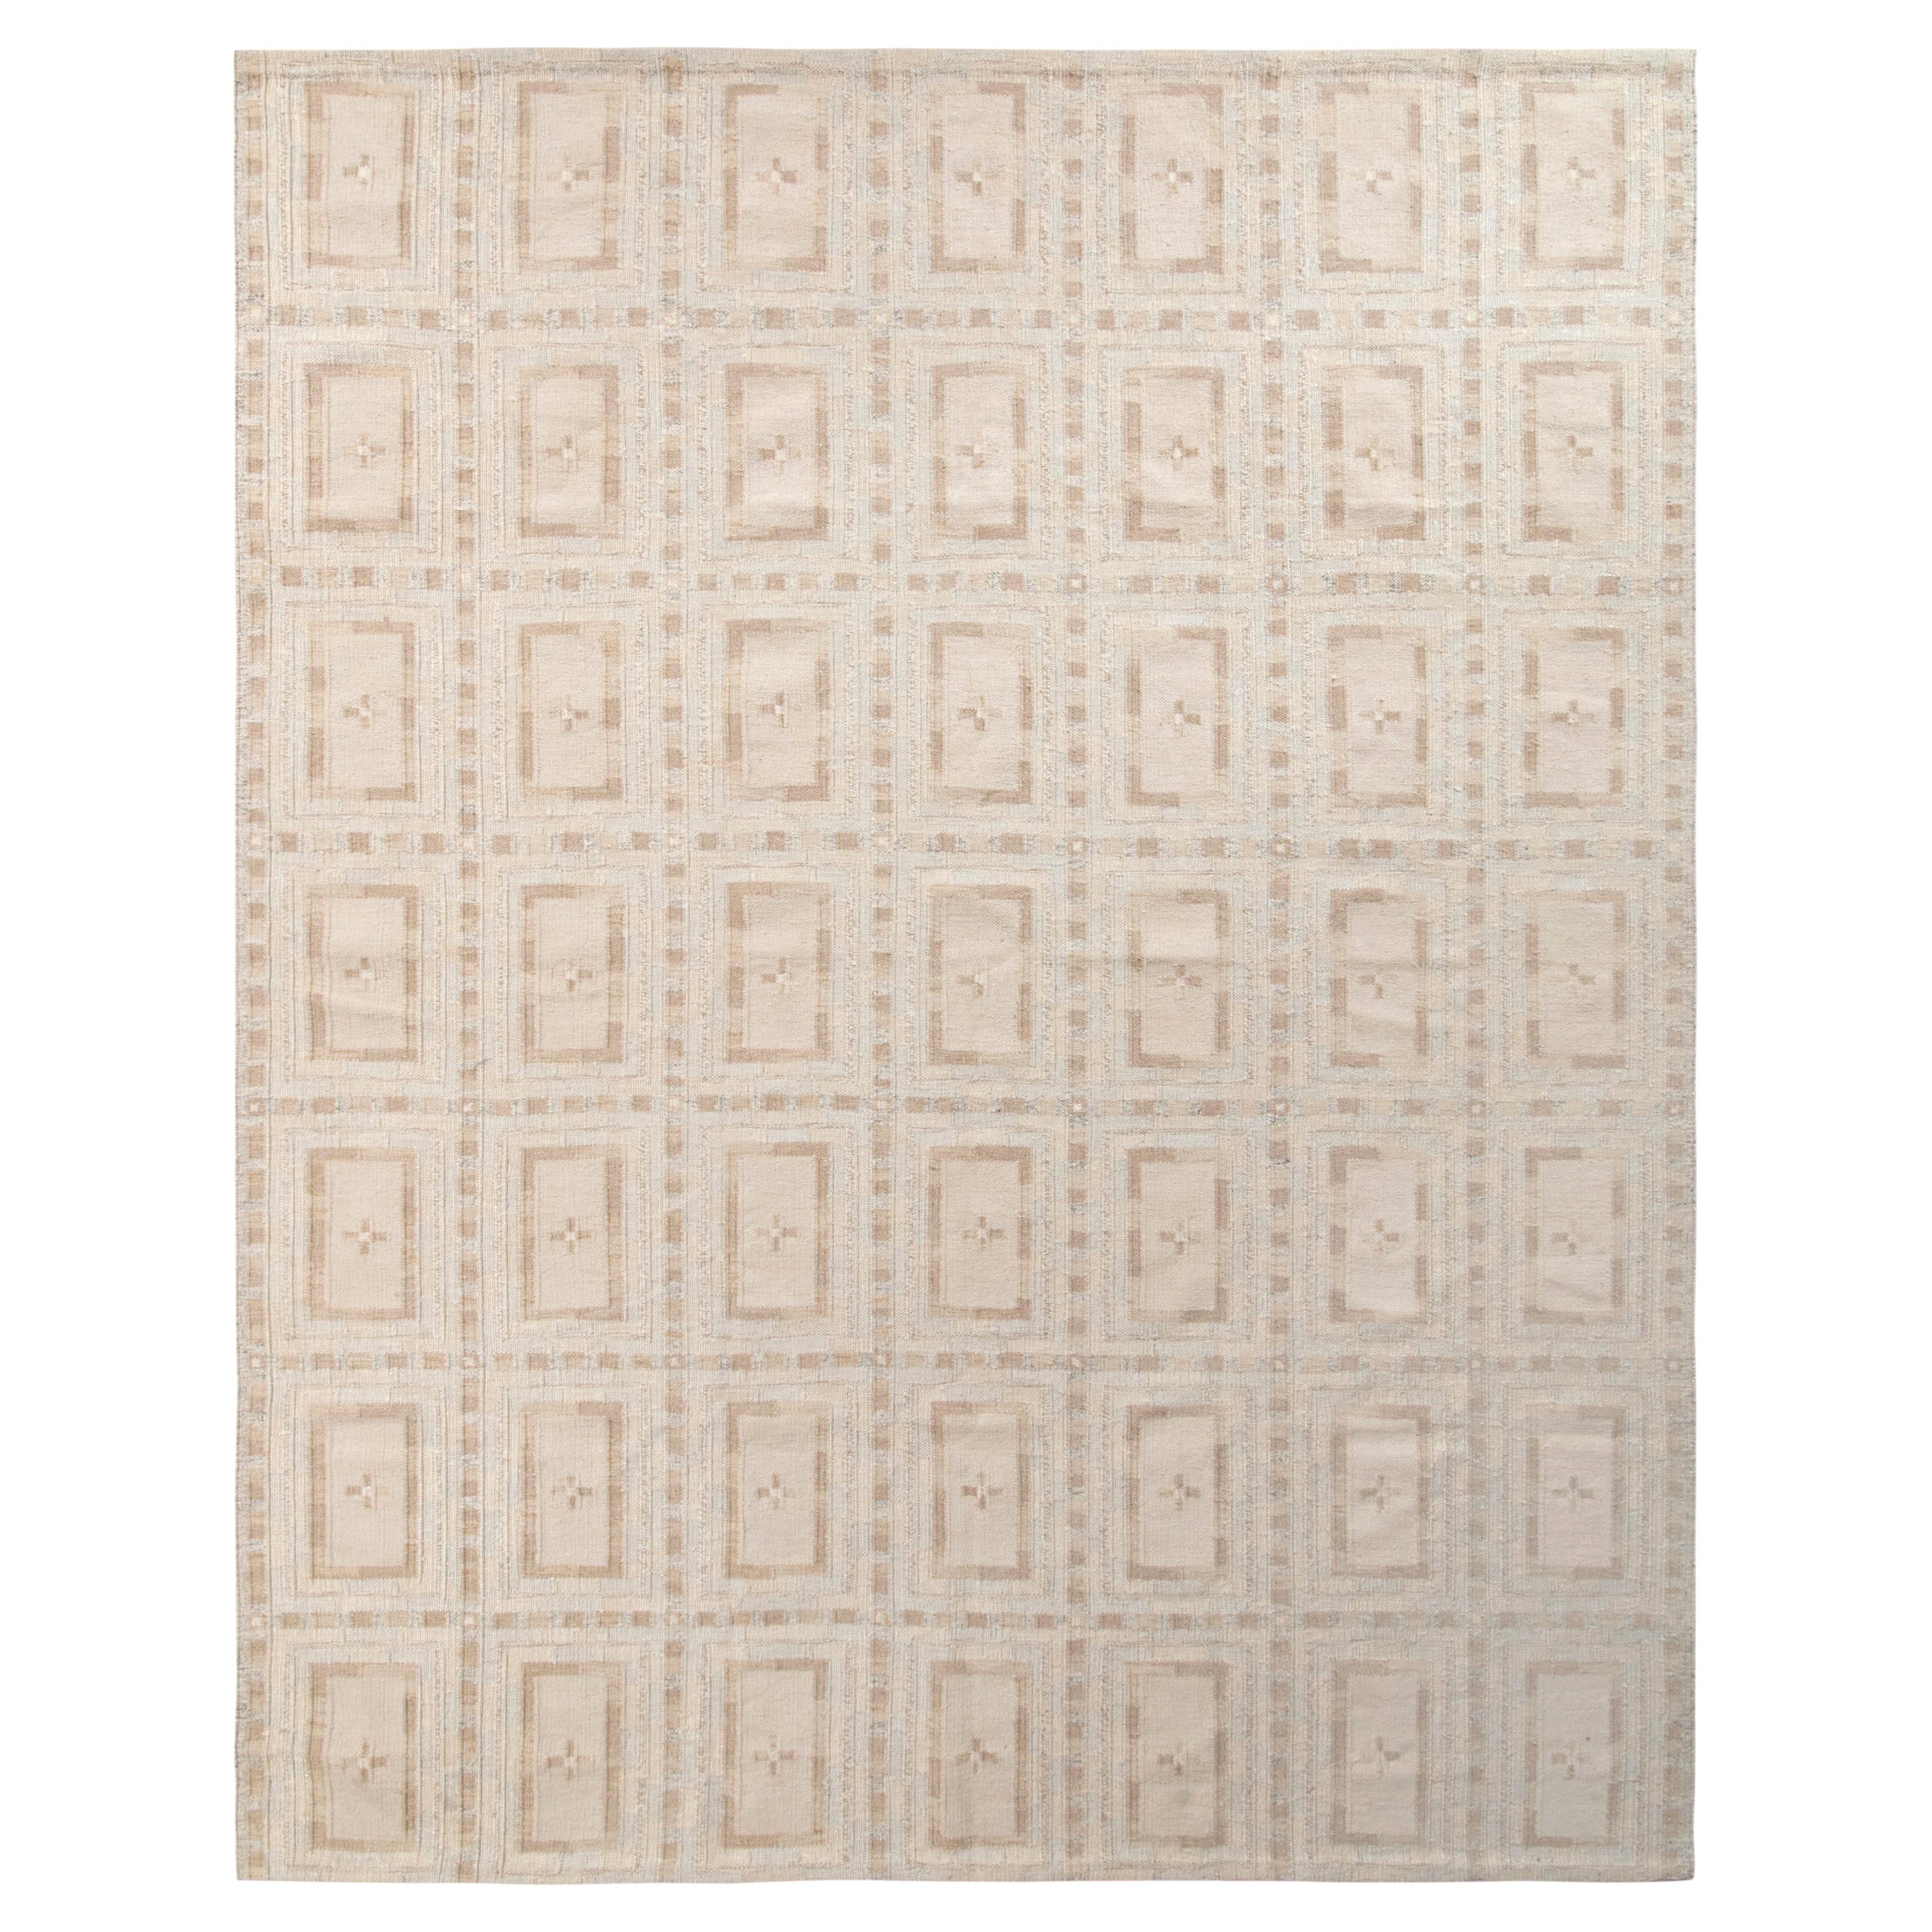 Rug & Kilim's Tapis Kilim personnalisé de style scandinave, motif géométrique beige-brun